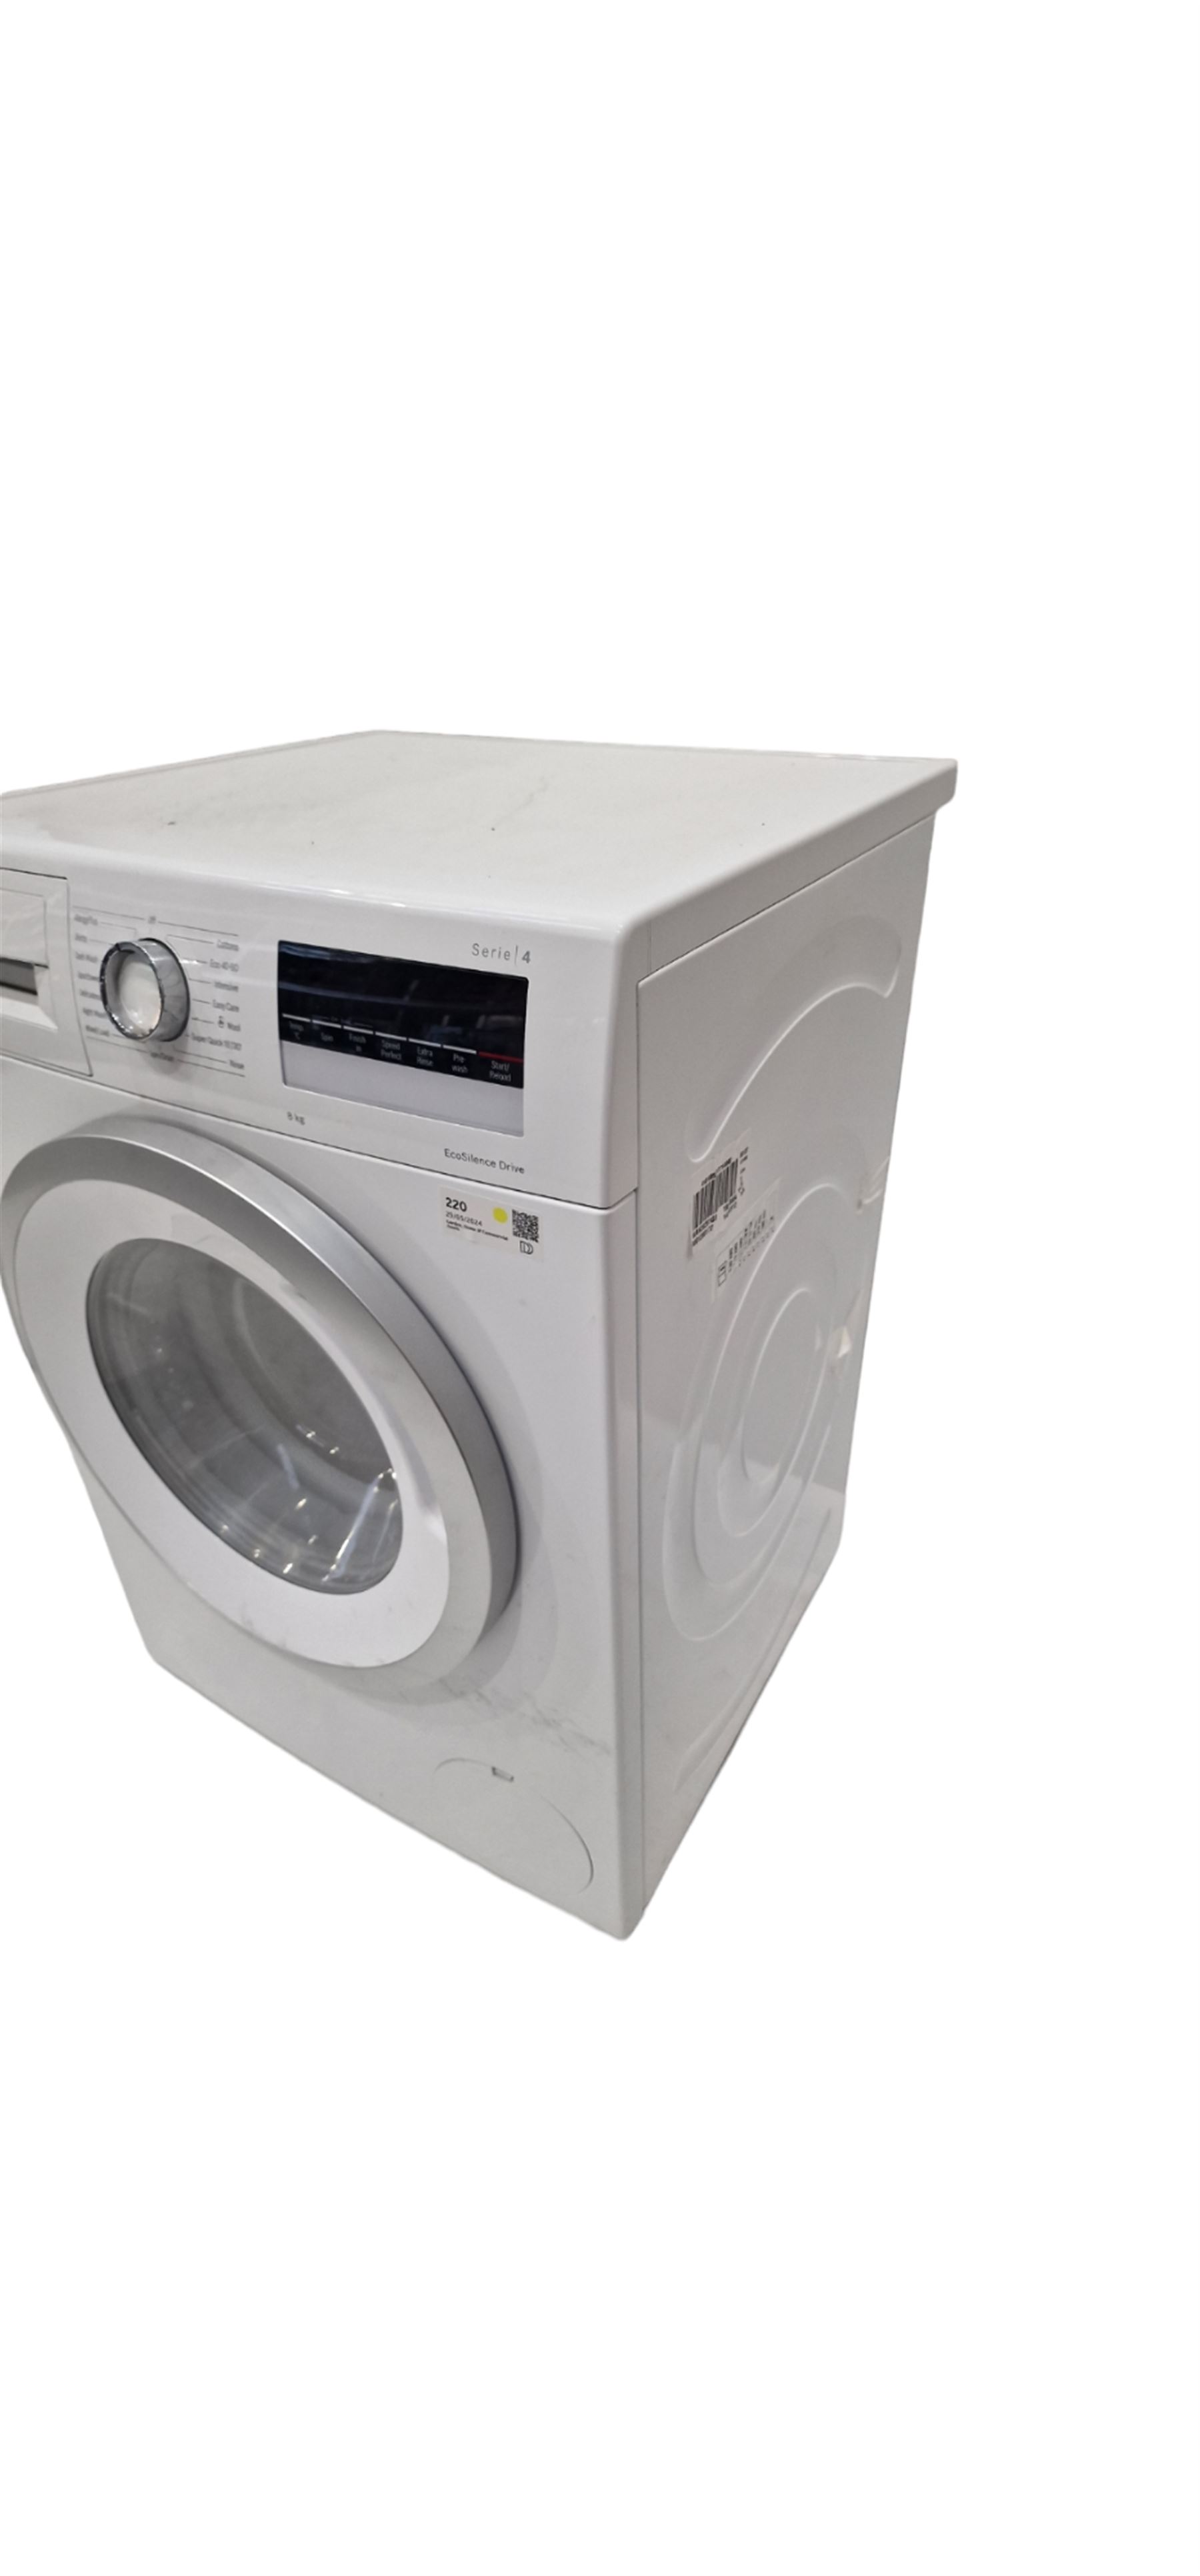 Bosch EcoSilence Drive washing machine 8kg - Image 3 of 3